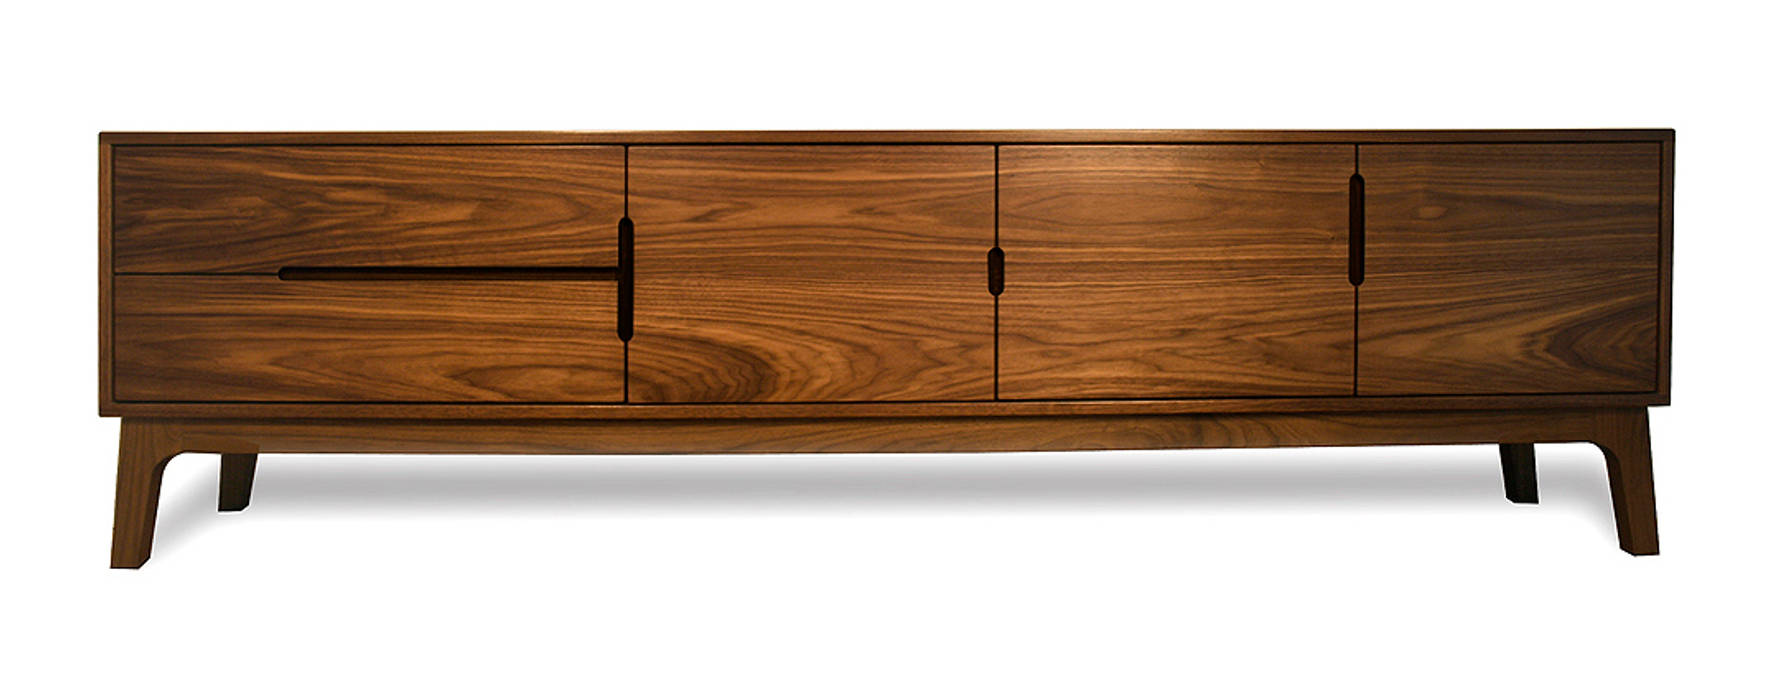 ES Sideboard Credenza AFID Design Living room Cupboards & sideboards